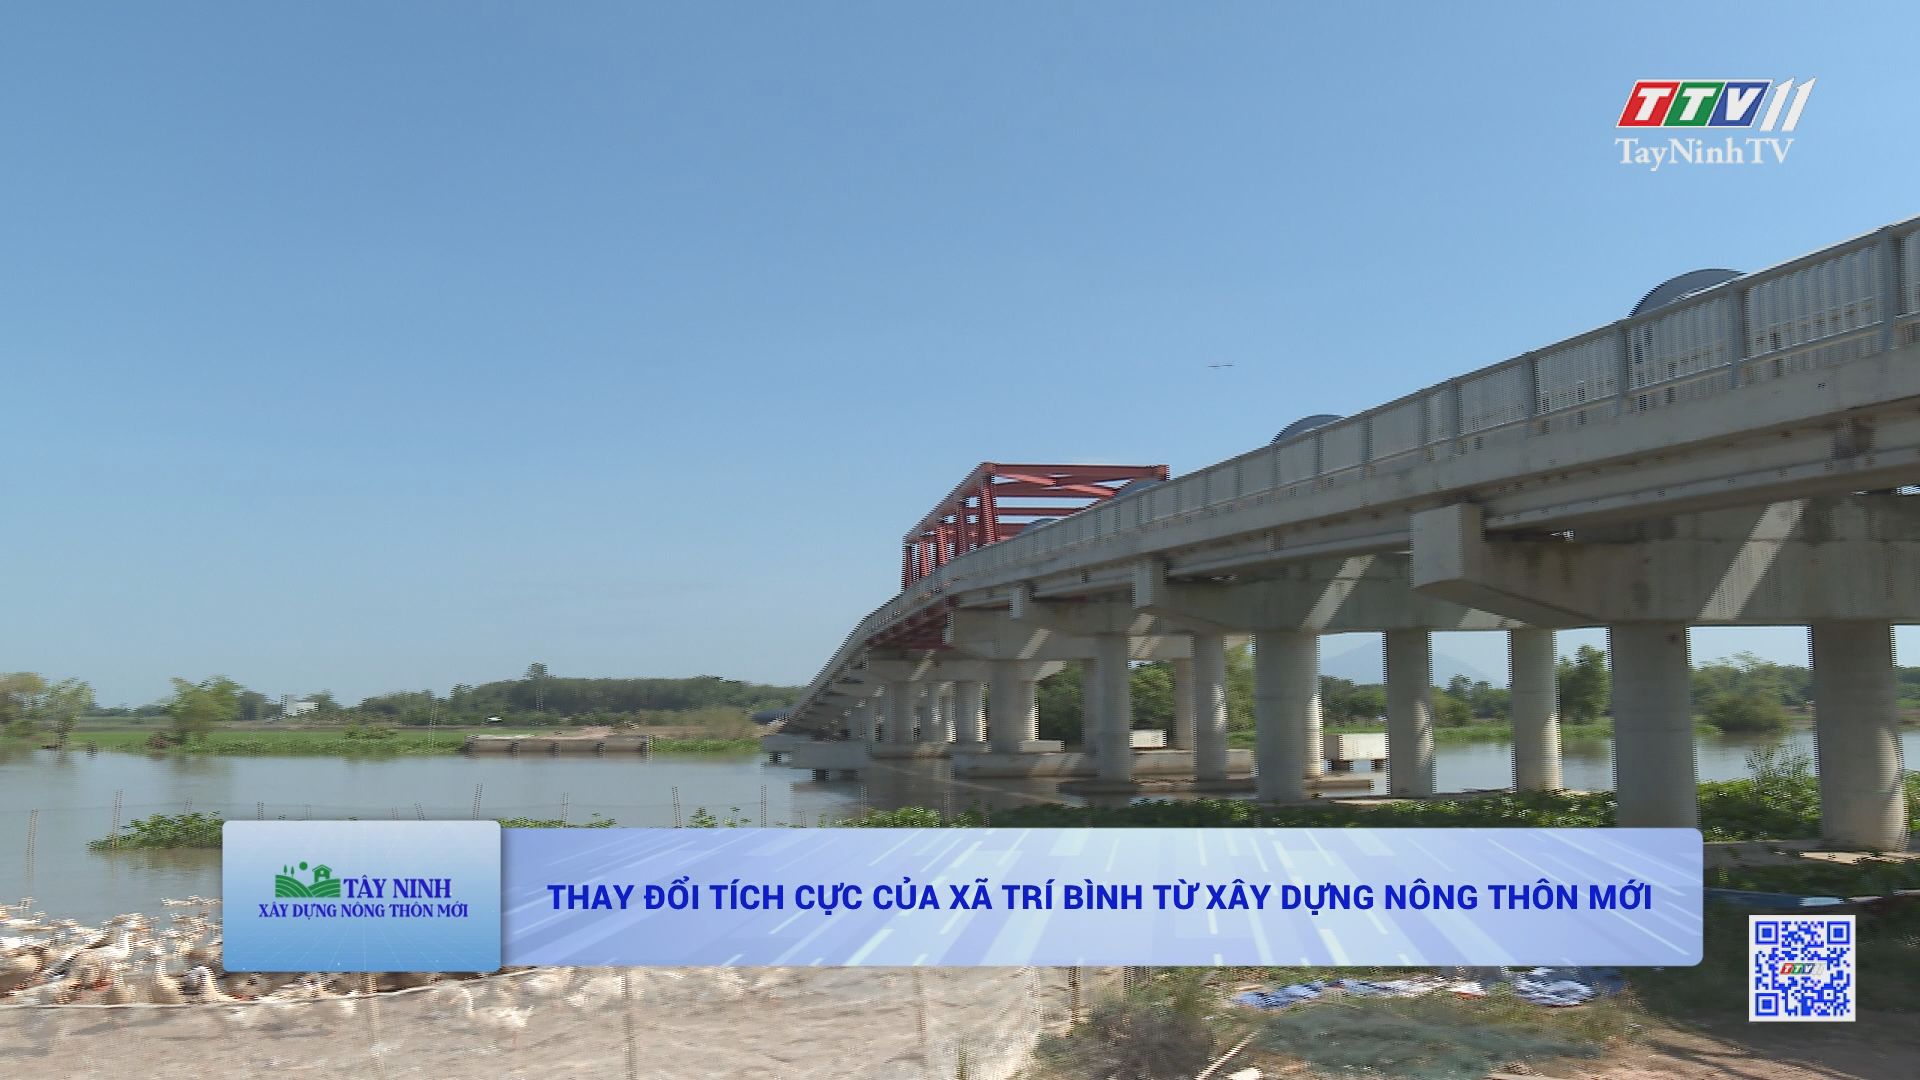 Thay đổi tích cực của xã Trí Bình từ xây dựng nông thôn mới | TÂY NINH XÂY DỰNG NÔNG THÔN MỚI | TayNinhTV